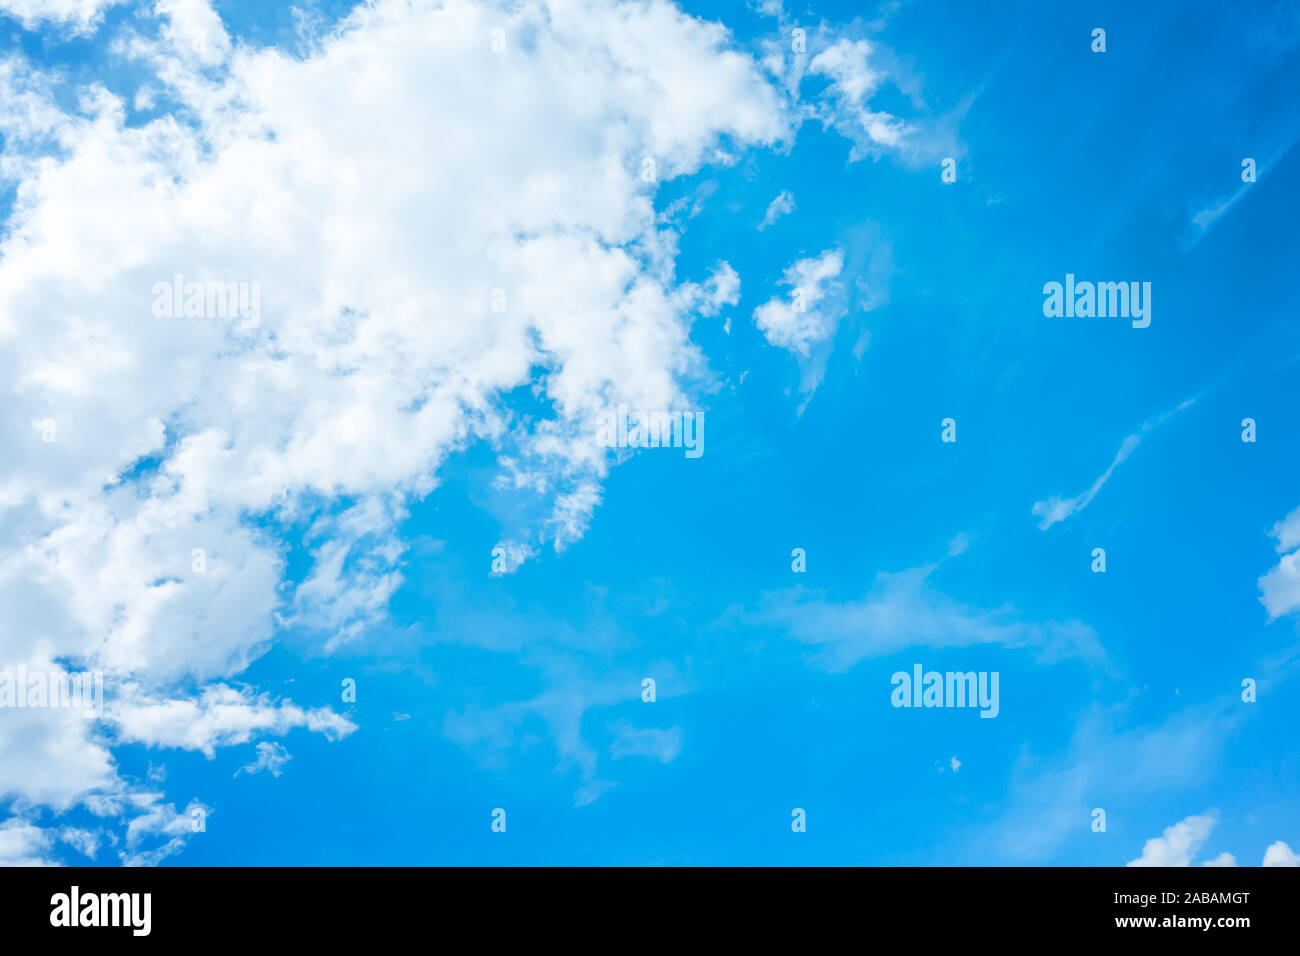 Ein blauer Himmel mit weissen Wolken Foto Stock